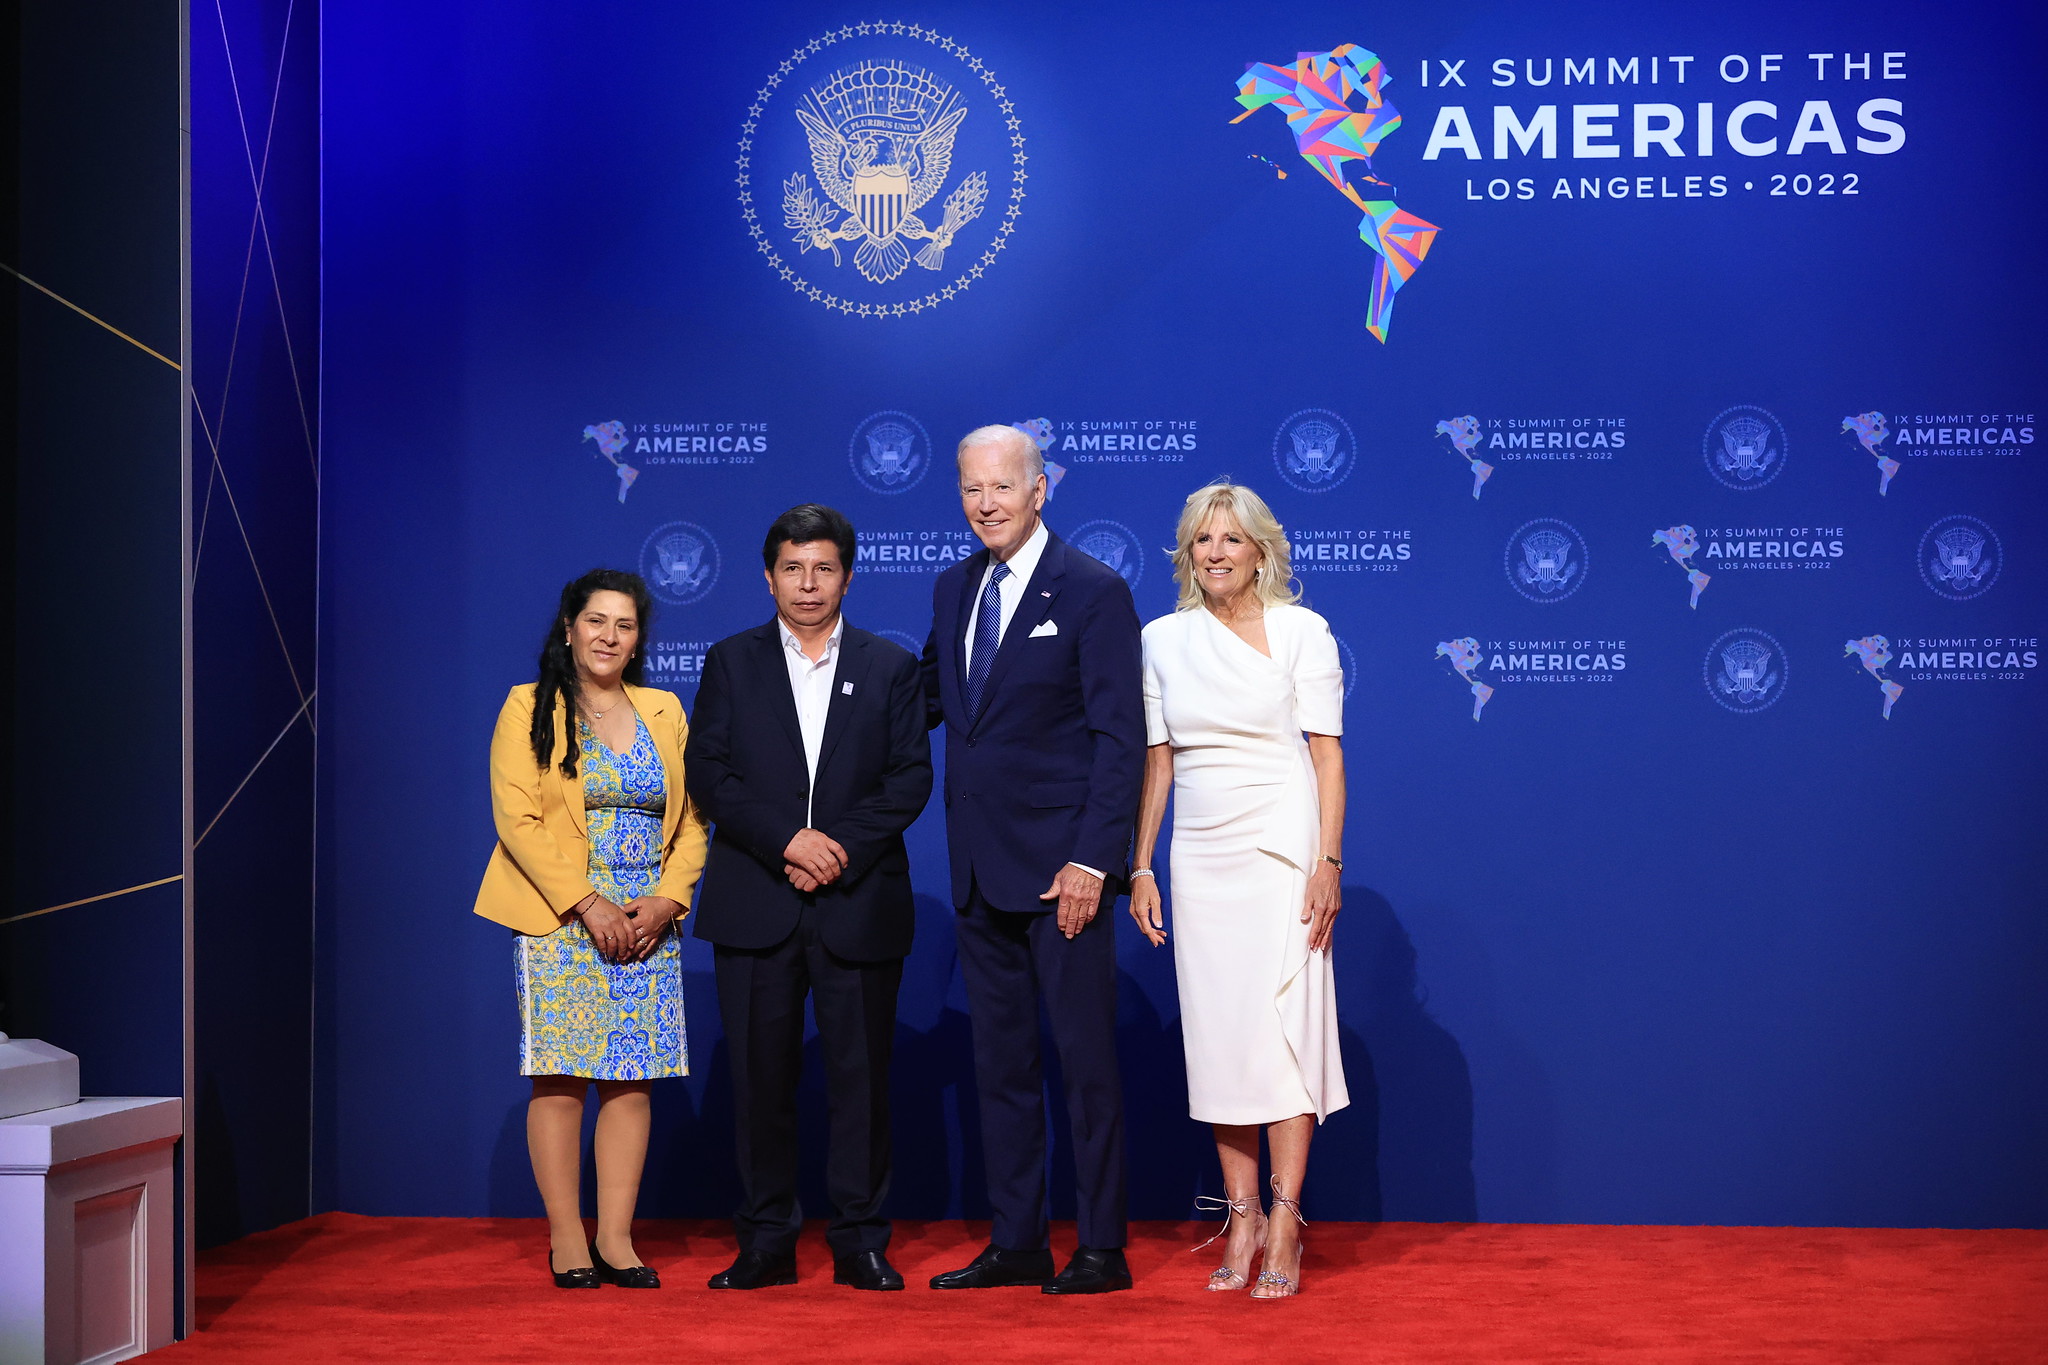 Presidente Humala Pedro Castillo fue recibido por el presidente de Estados Unidos Joe Biden en la IX Cumbre de las Américas